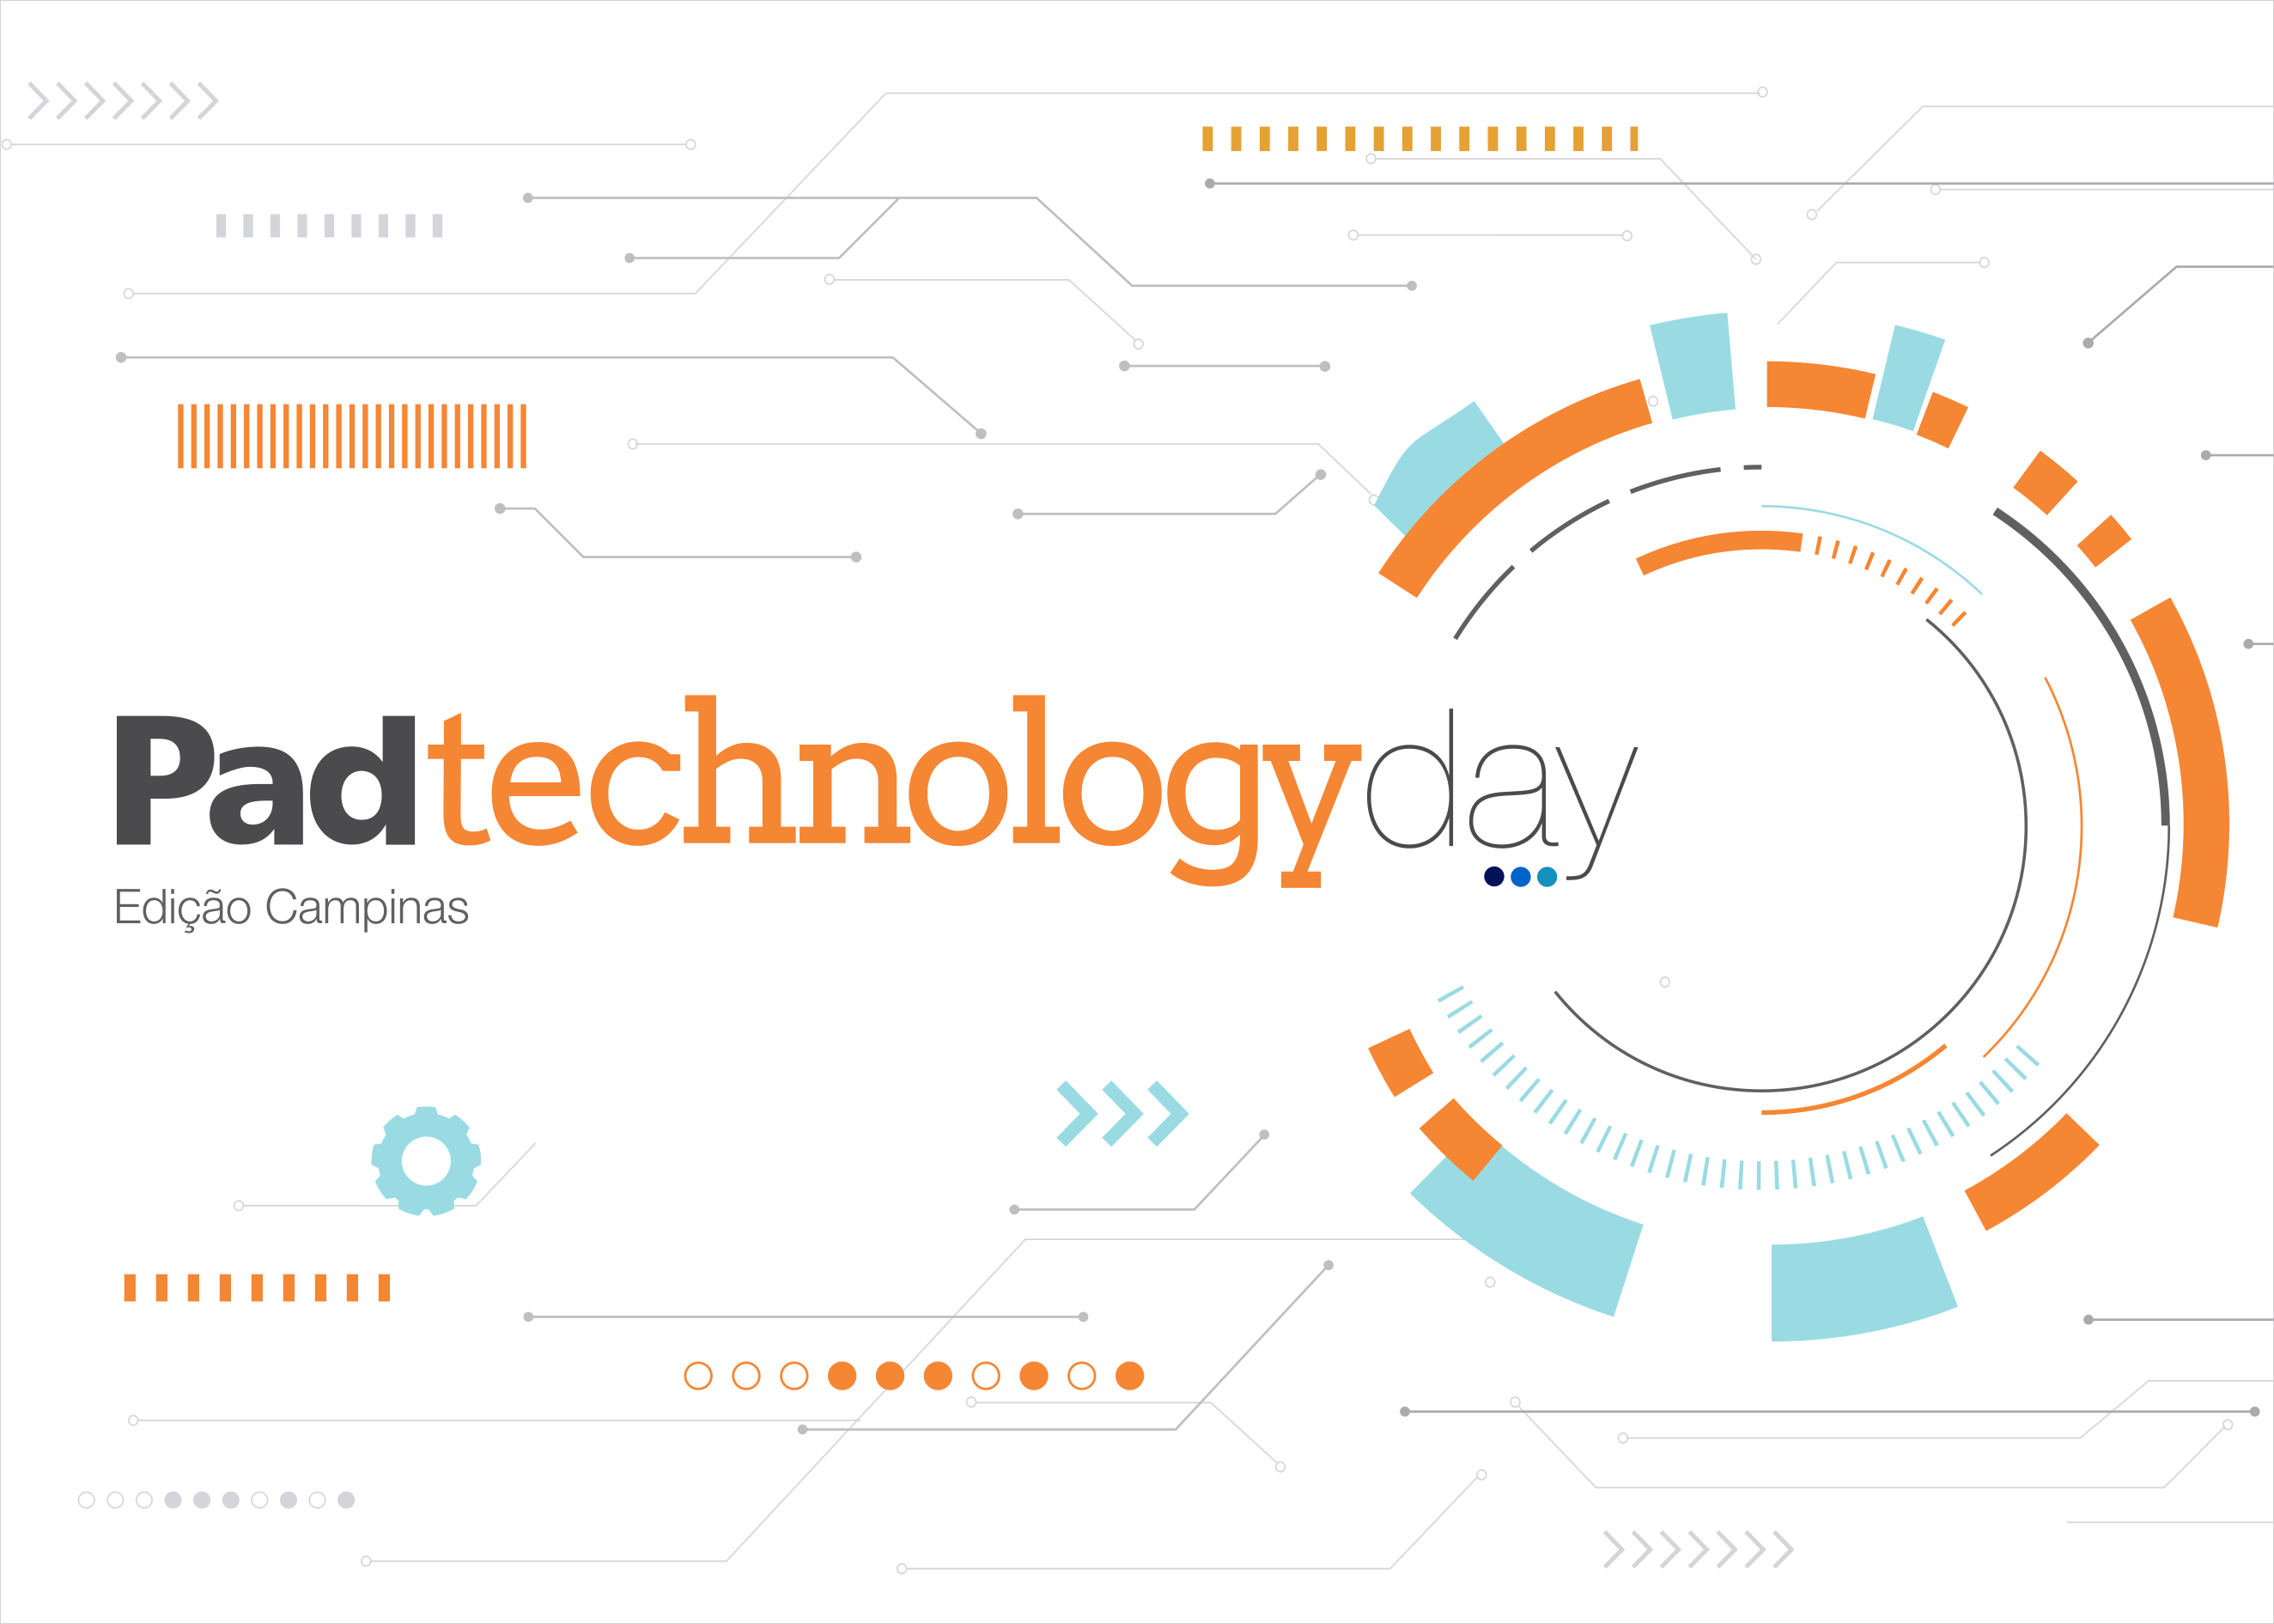 Padtec promove evento para a troca de conhecimentos sobre tecnologia entre empresas do setor de telecom